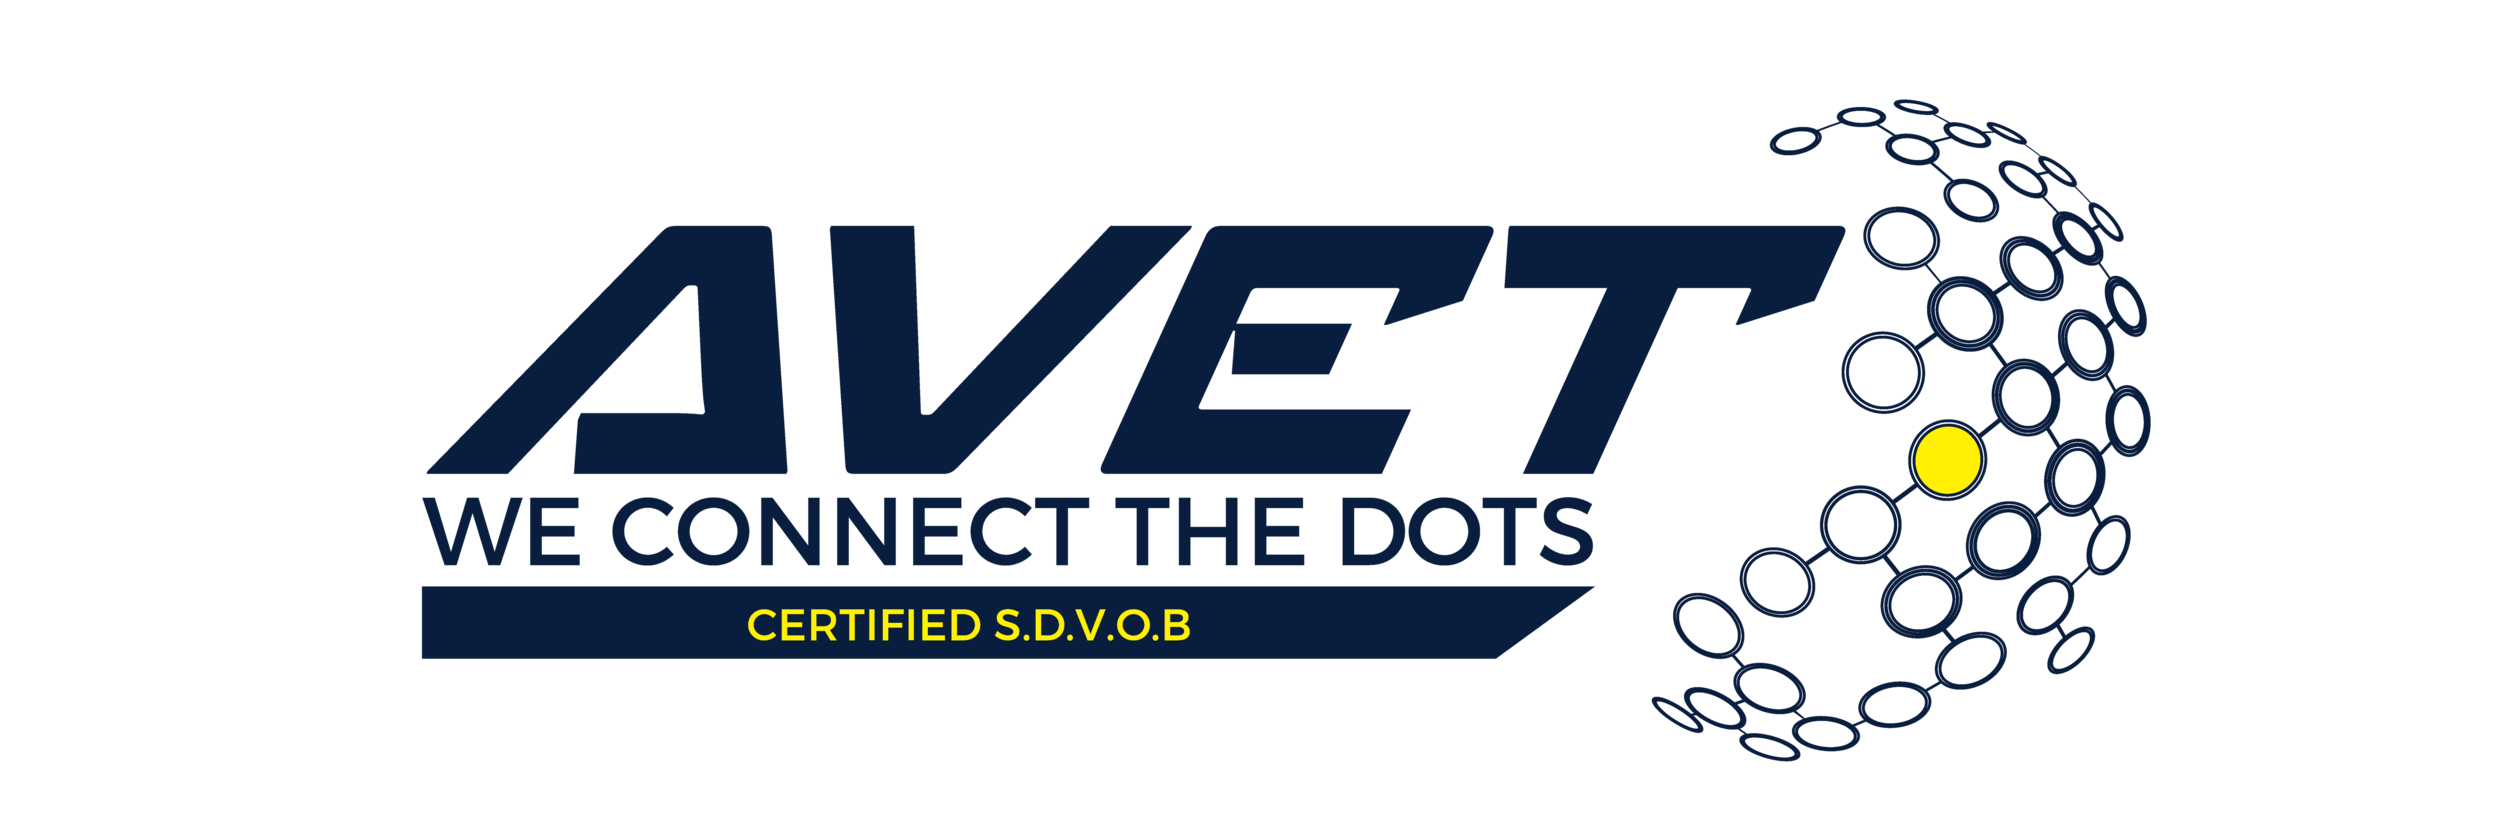 American Veteran Enterprise Team (AVET) LLC